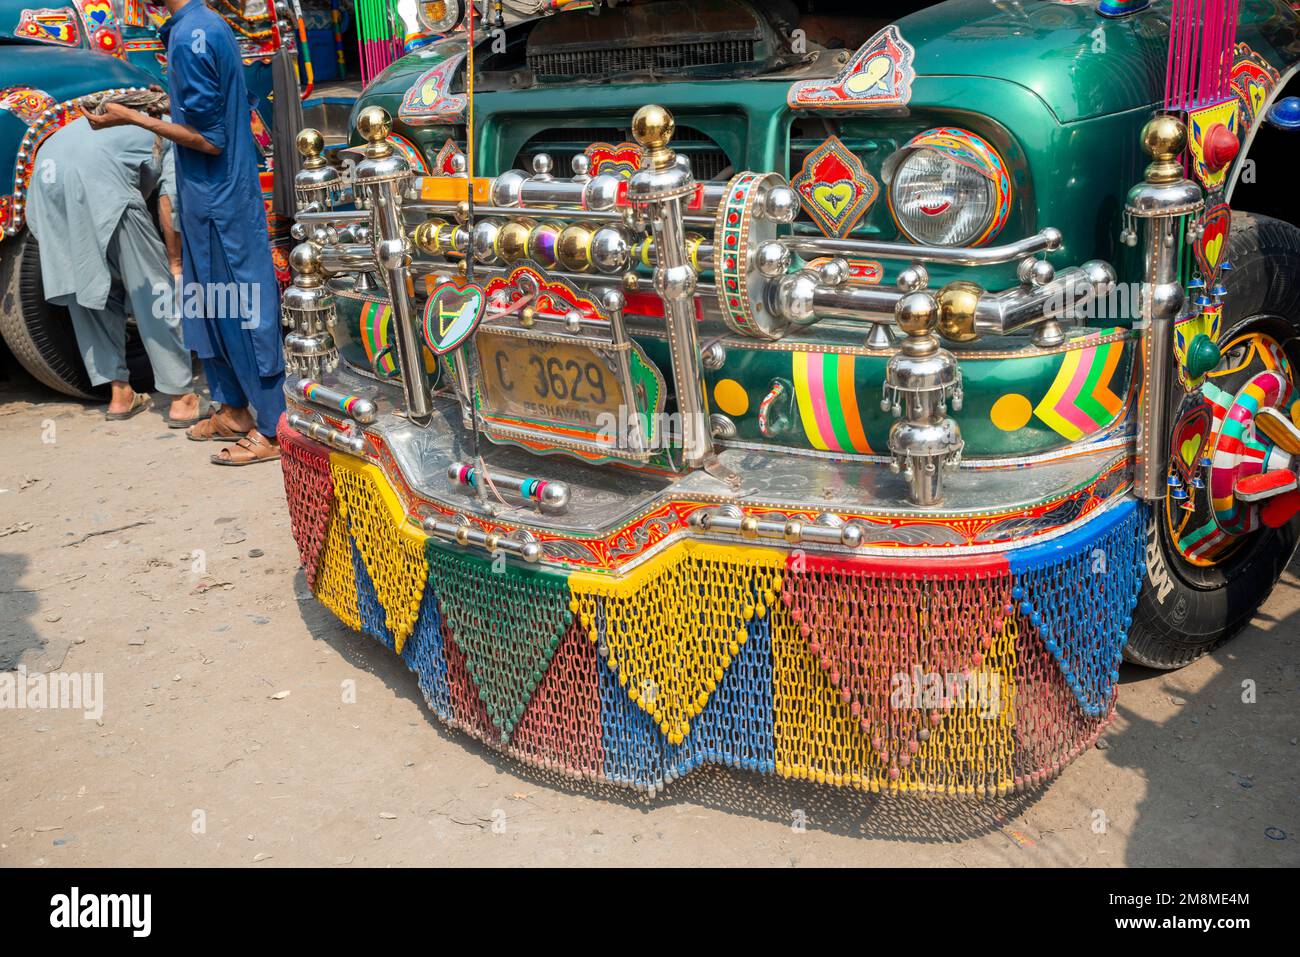 Détail des décorations avant d'un bus peint en couleur, Peshawar, Pakistan Banque D'Images